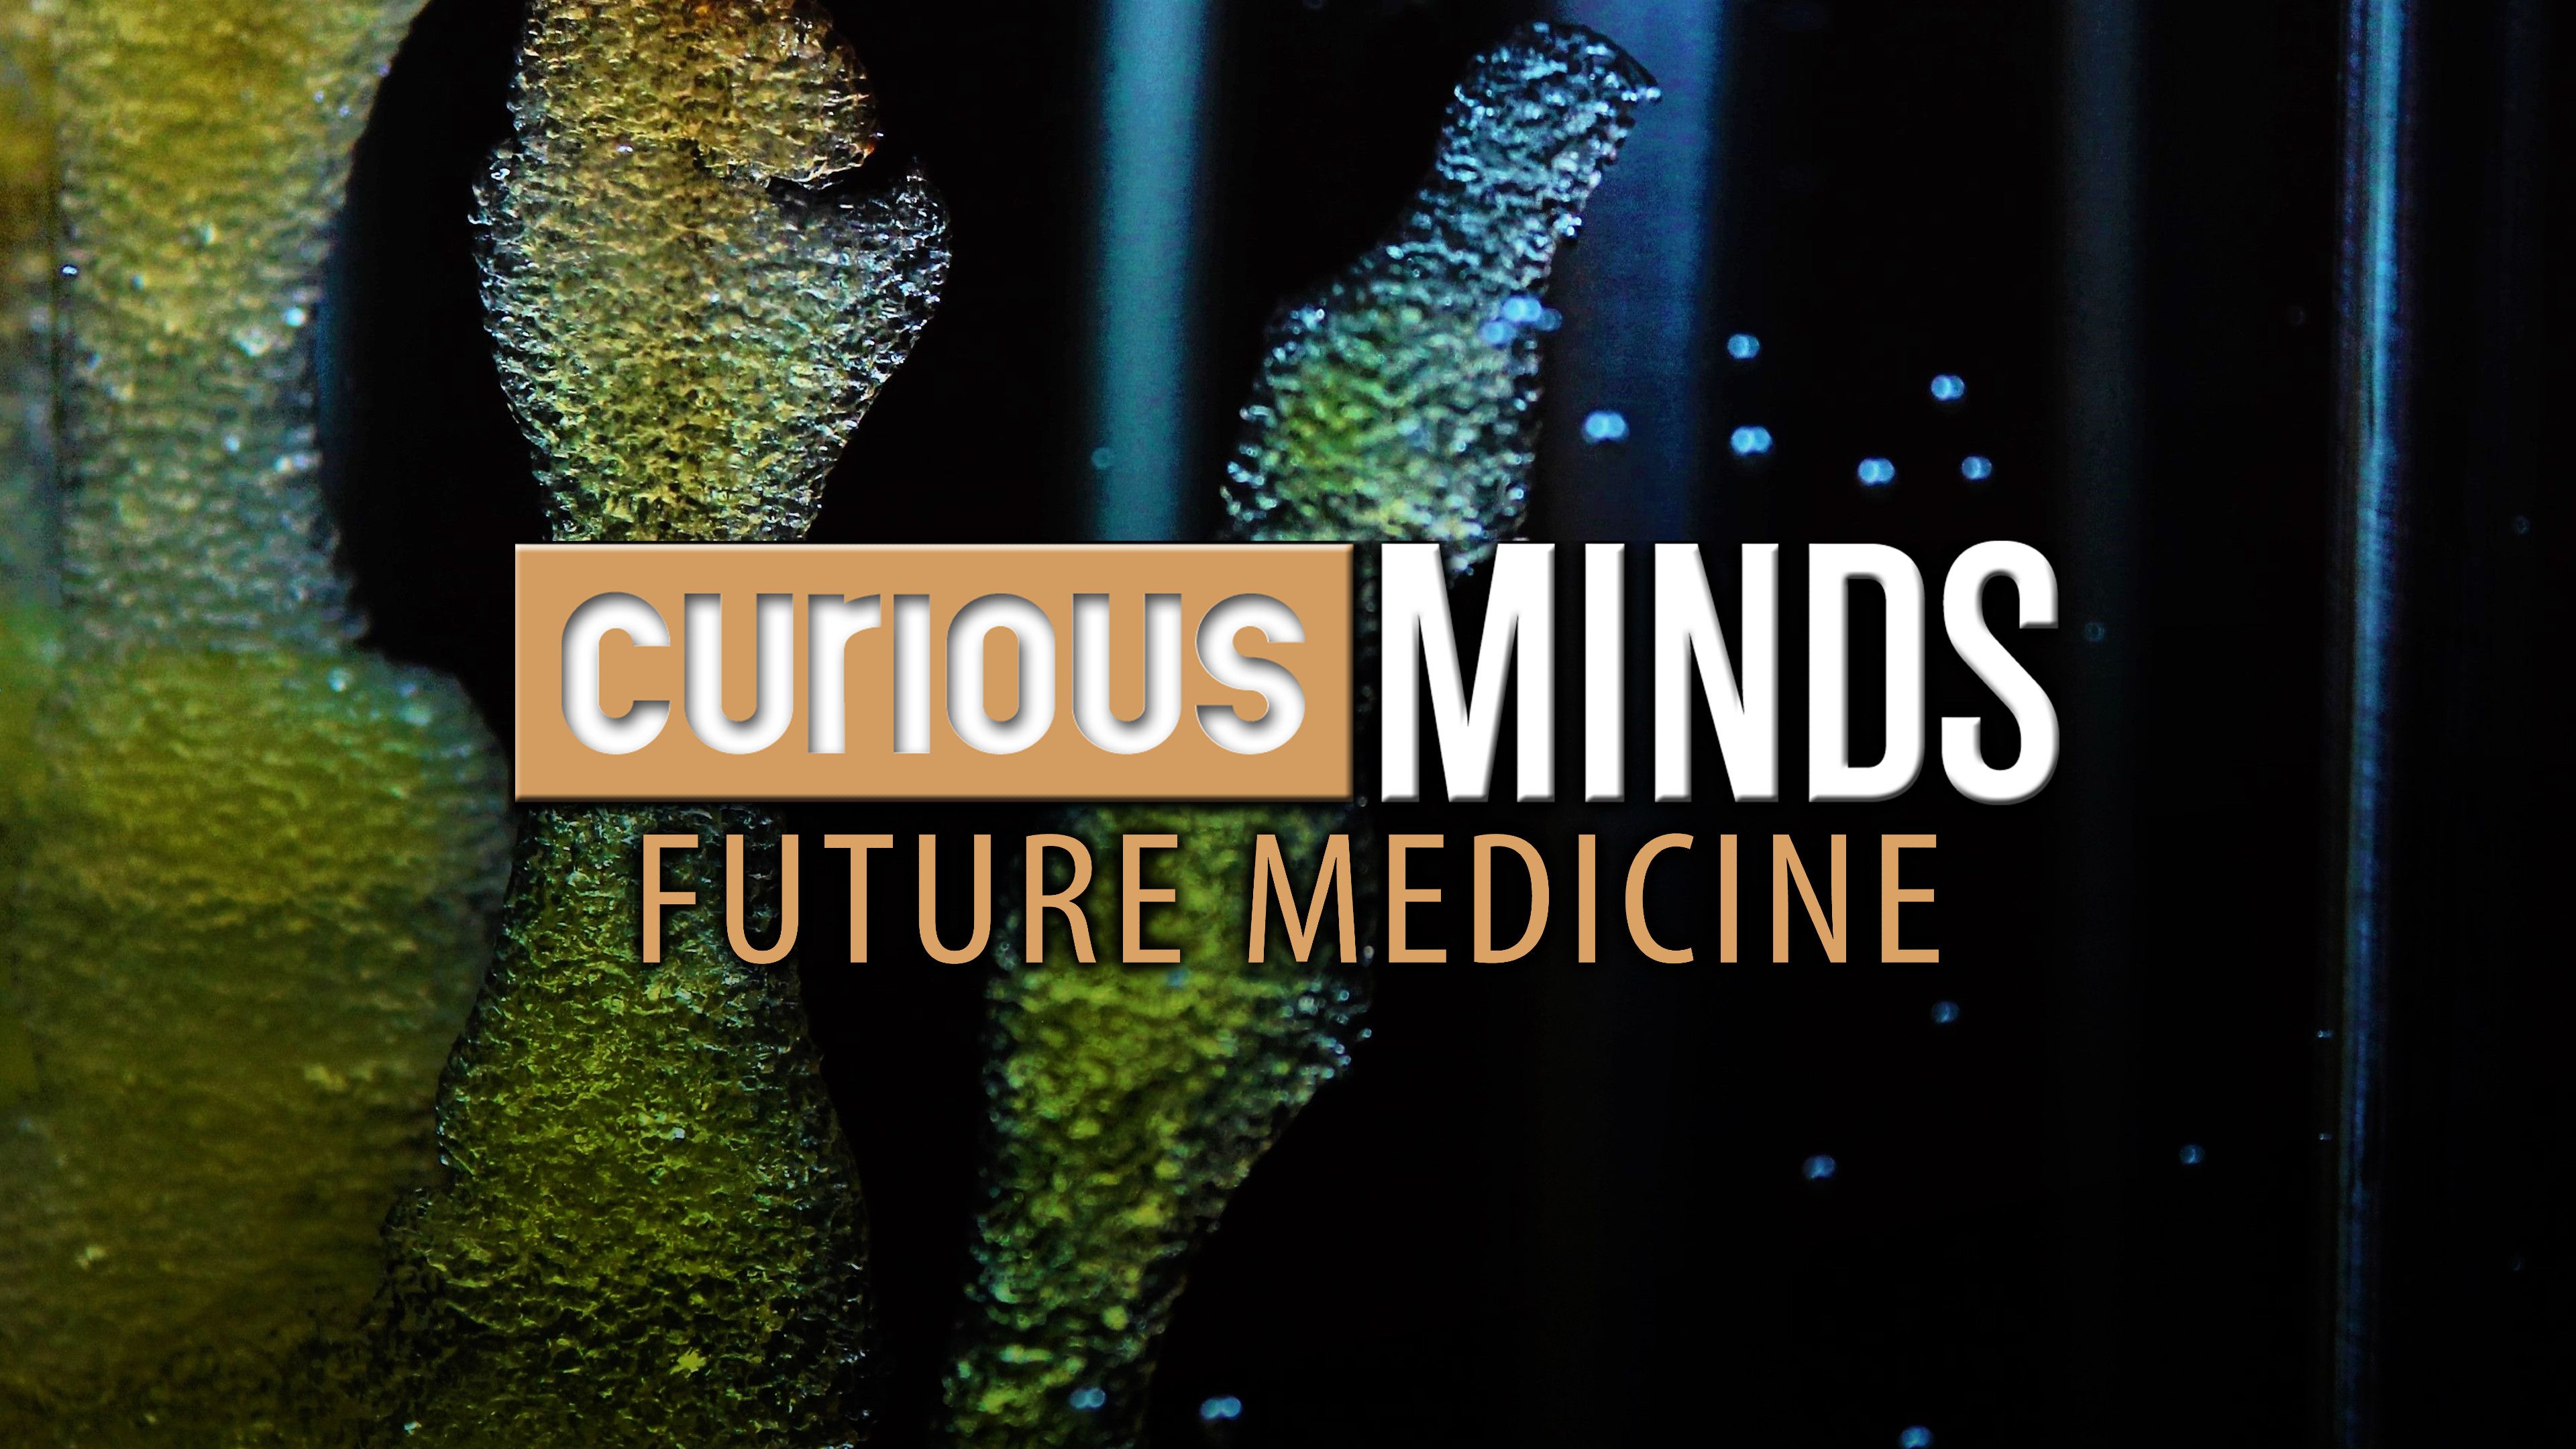 Curious Minds: Future Medicine